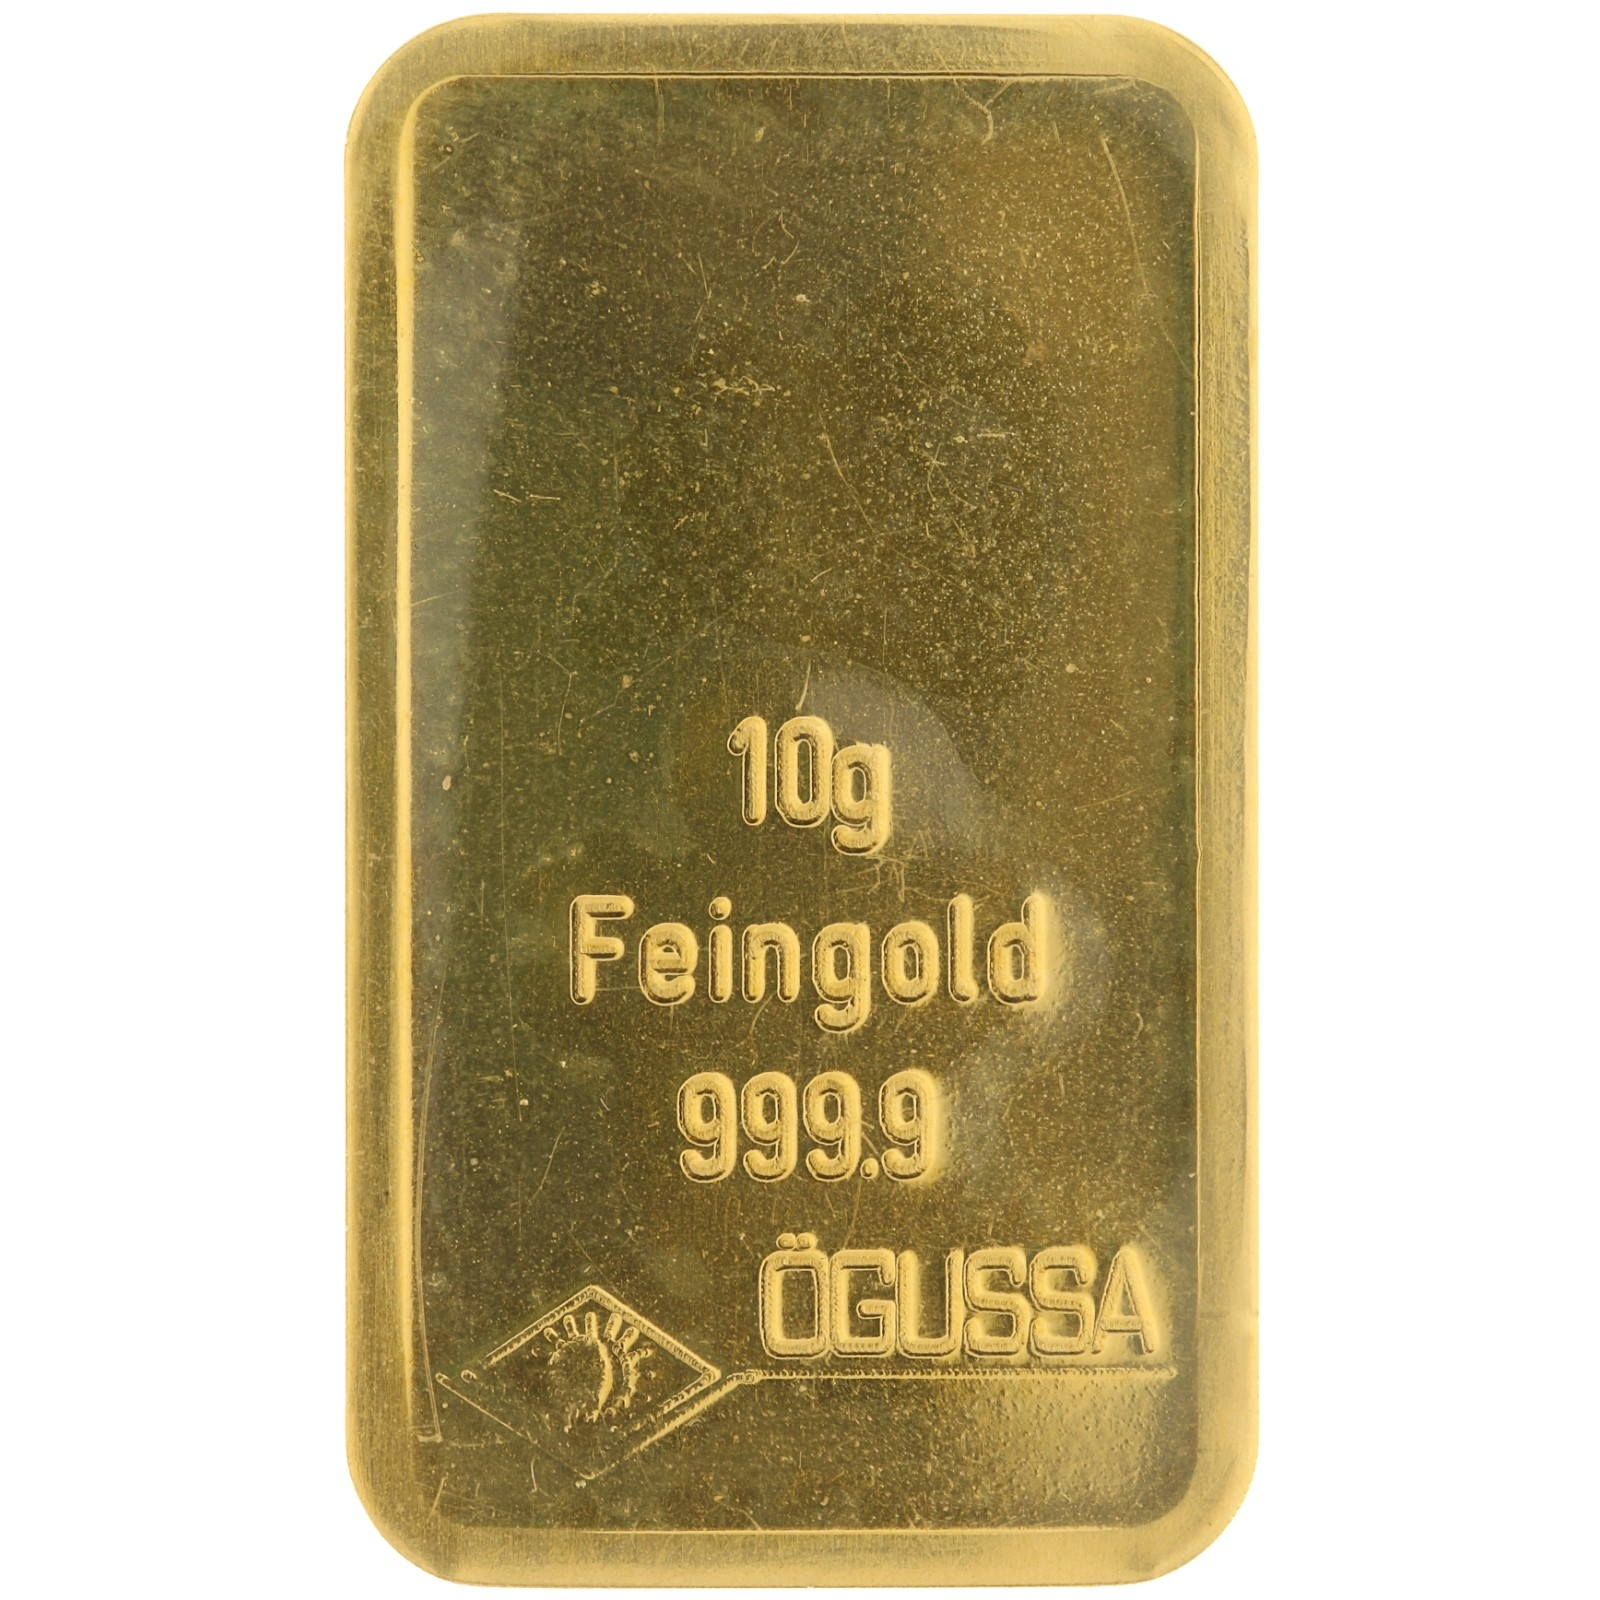 Ogussa - 10 gram fine gold - bar